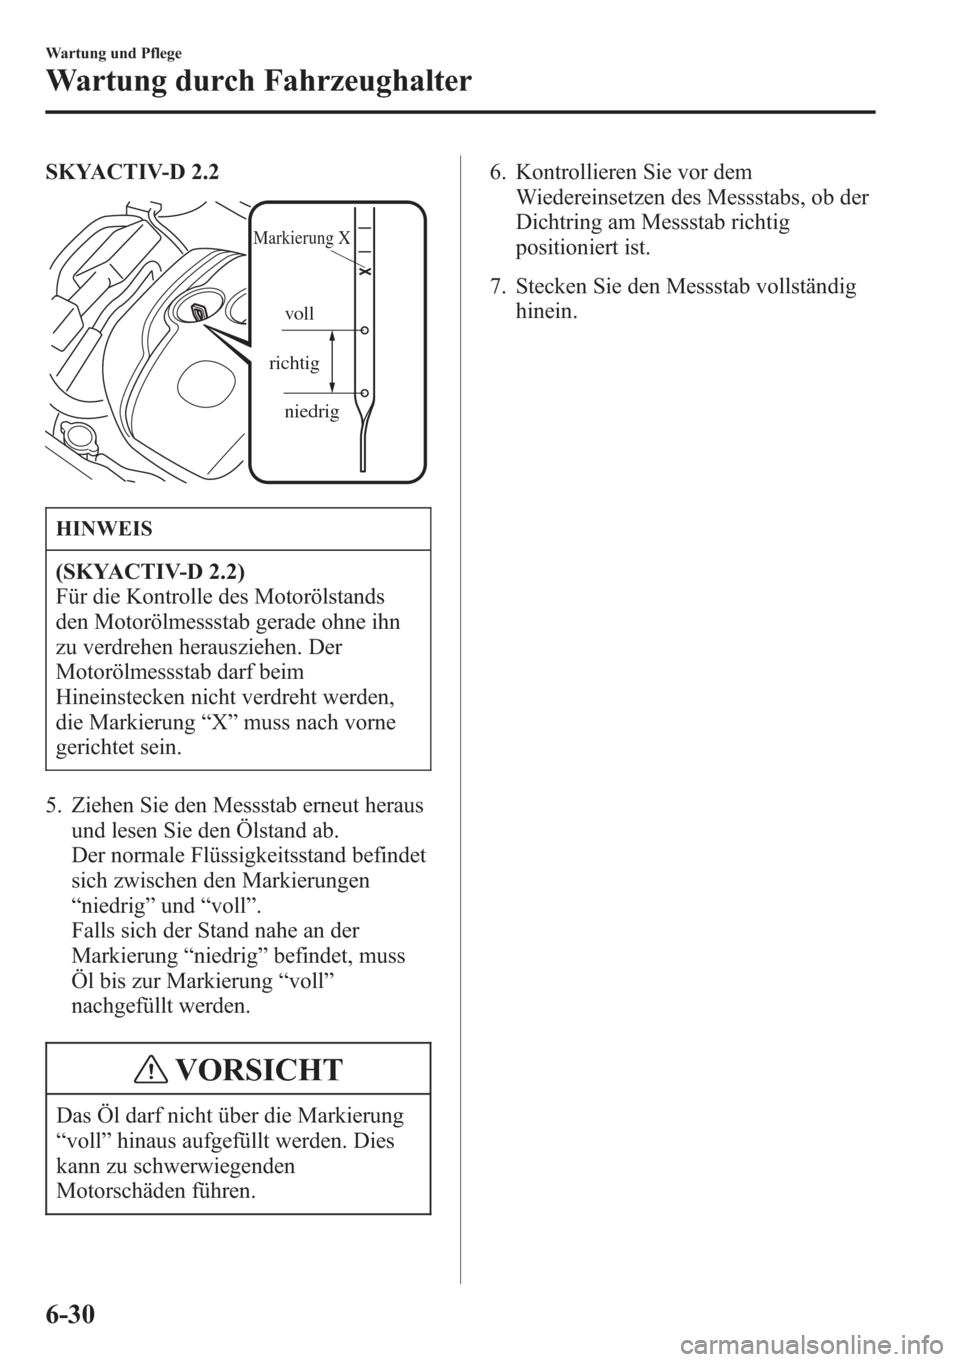 MAZDA MODEL 6 2015  Betriebsanleitung (in German) SKYACTIV-D 2.2
niedrig  richtigvoll 
Markierung X
HINWEIS
(SKYACTIV-D 2.2)
Für die Kontrolle des Motorölstands
den Motorölmessstab gerade ohne ihn
zu verdrehen herausziehen. Der
Motorölmessstab da